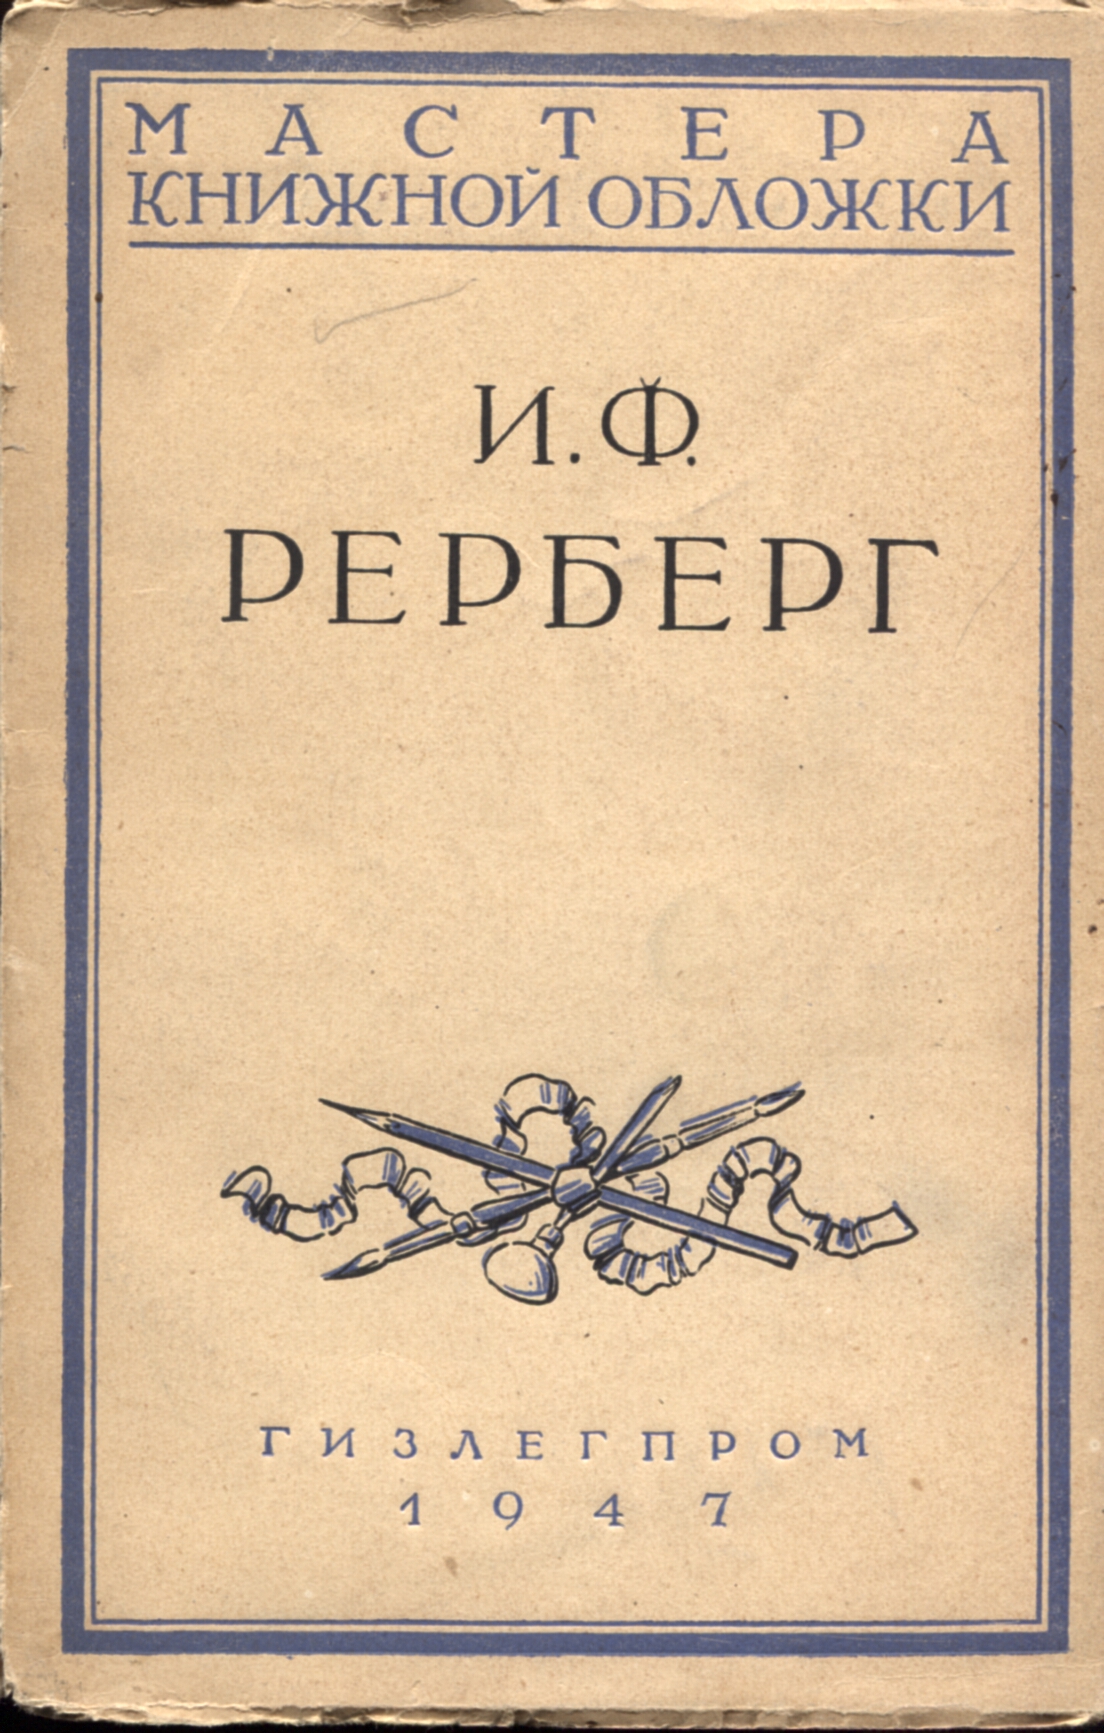 А.А. Сидоров, Мастера книжной обложки. И.Ф. Рерберг, ГИЗЛЕГПРОМ 1947 год